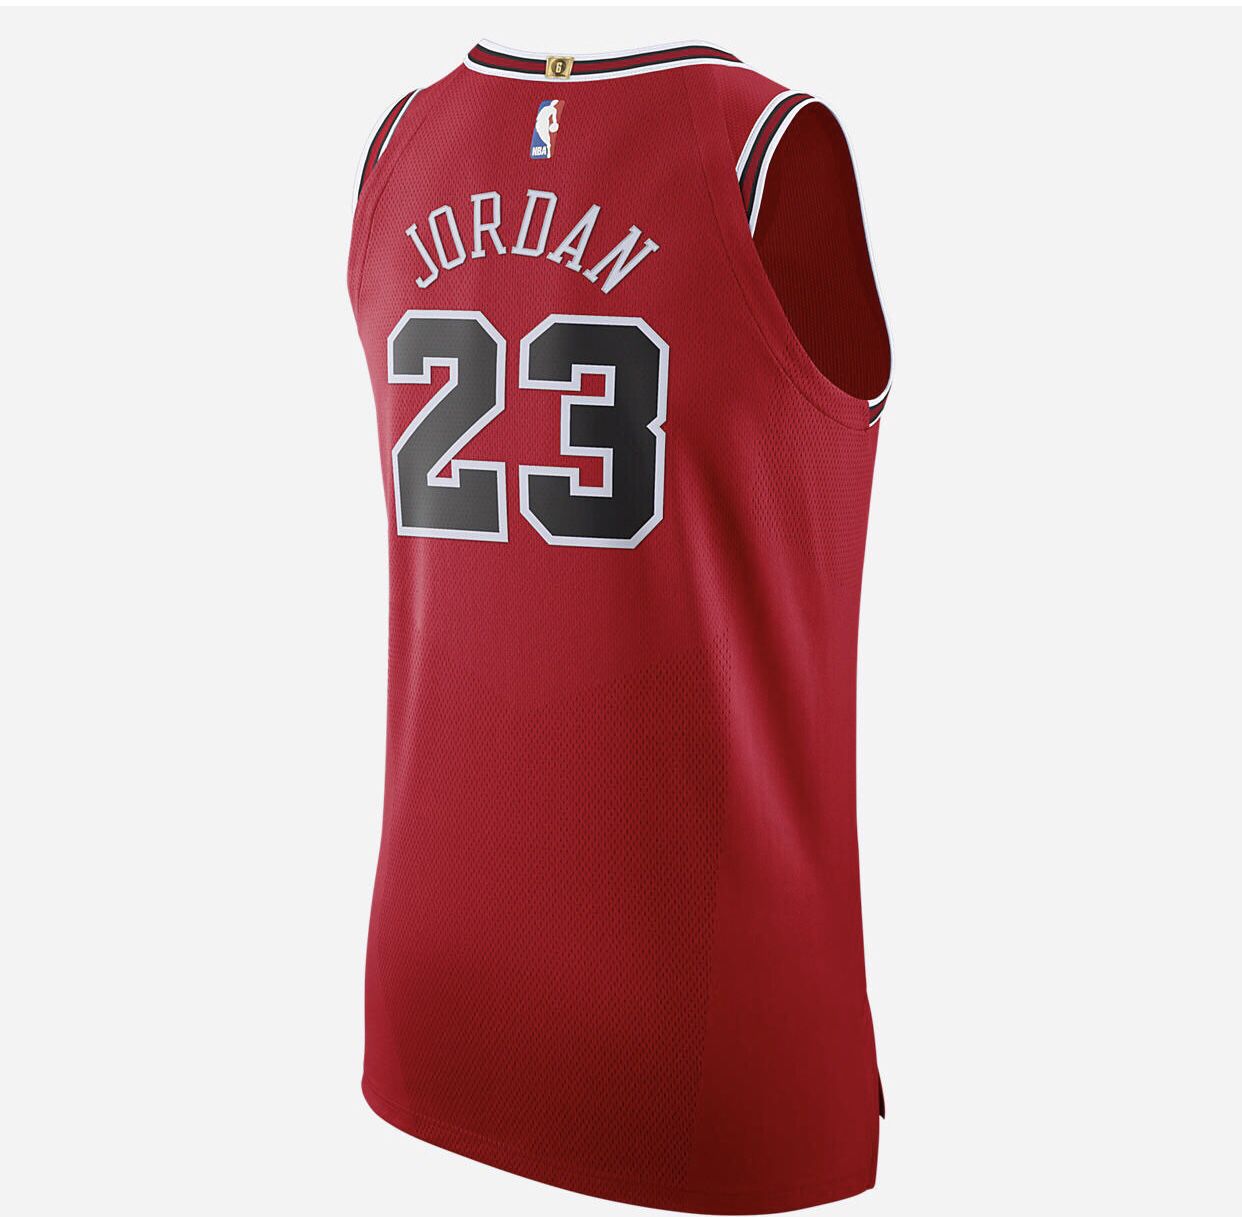 Off White Bulls Jordan Jersey for Sale in Phoenix, AZ - OfferUp